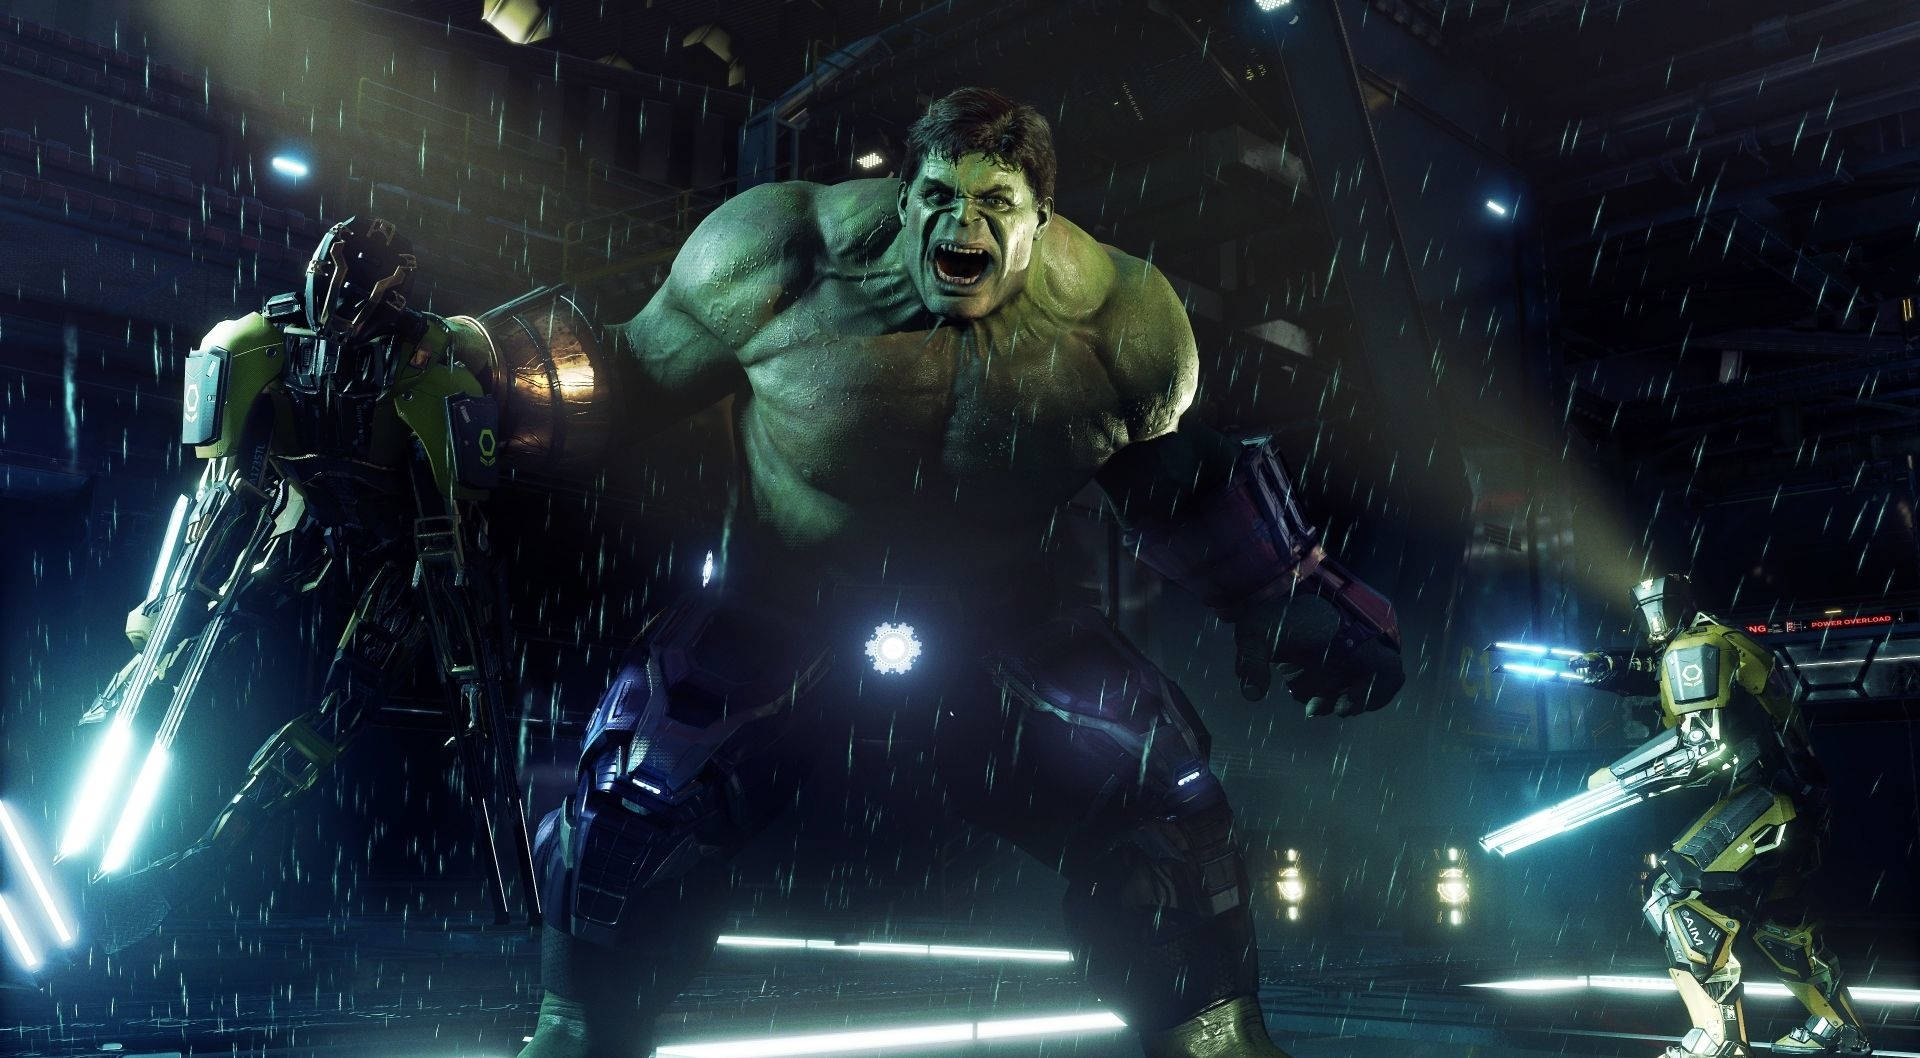 Hulk Bilder